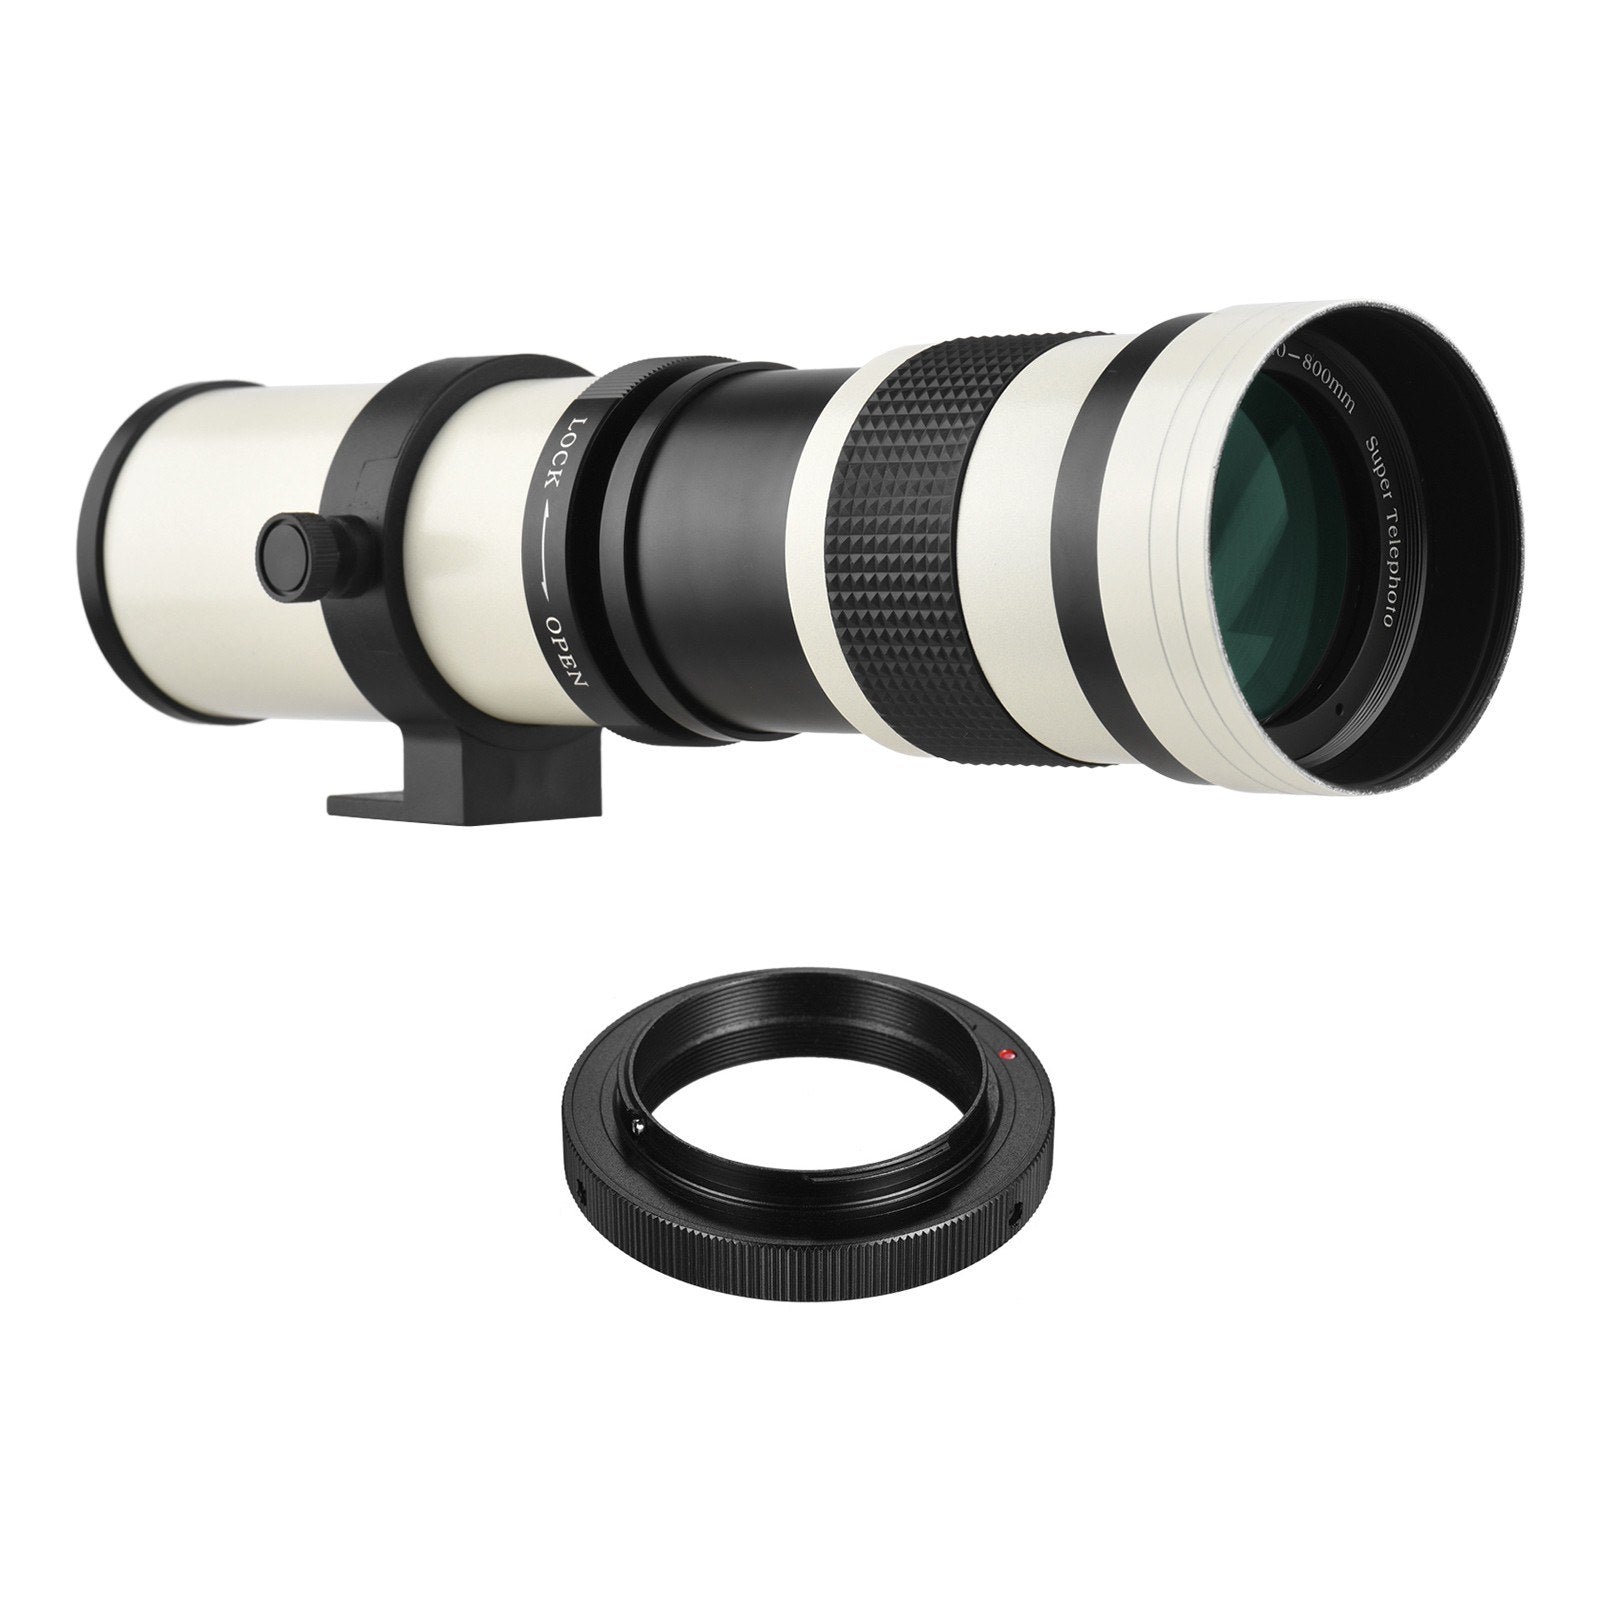 Camera MF Telephoto Zoom Lens Universal 1/4 Thread Replacement for Nikon AI-mount D50 D90 D5100 D7000 D3 D5100 D3100 D3000 D60 Cameras - White